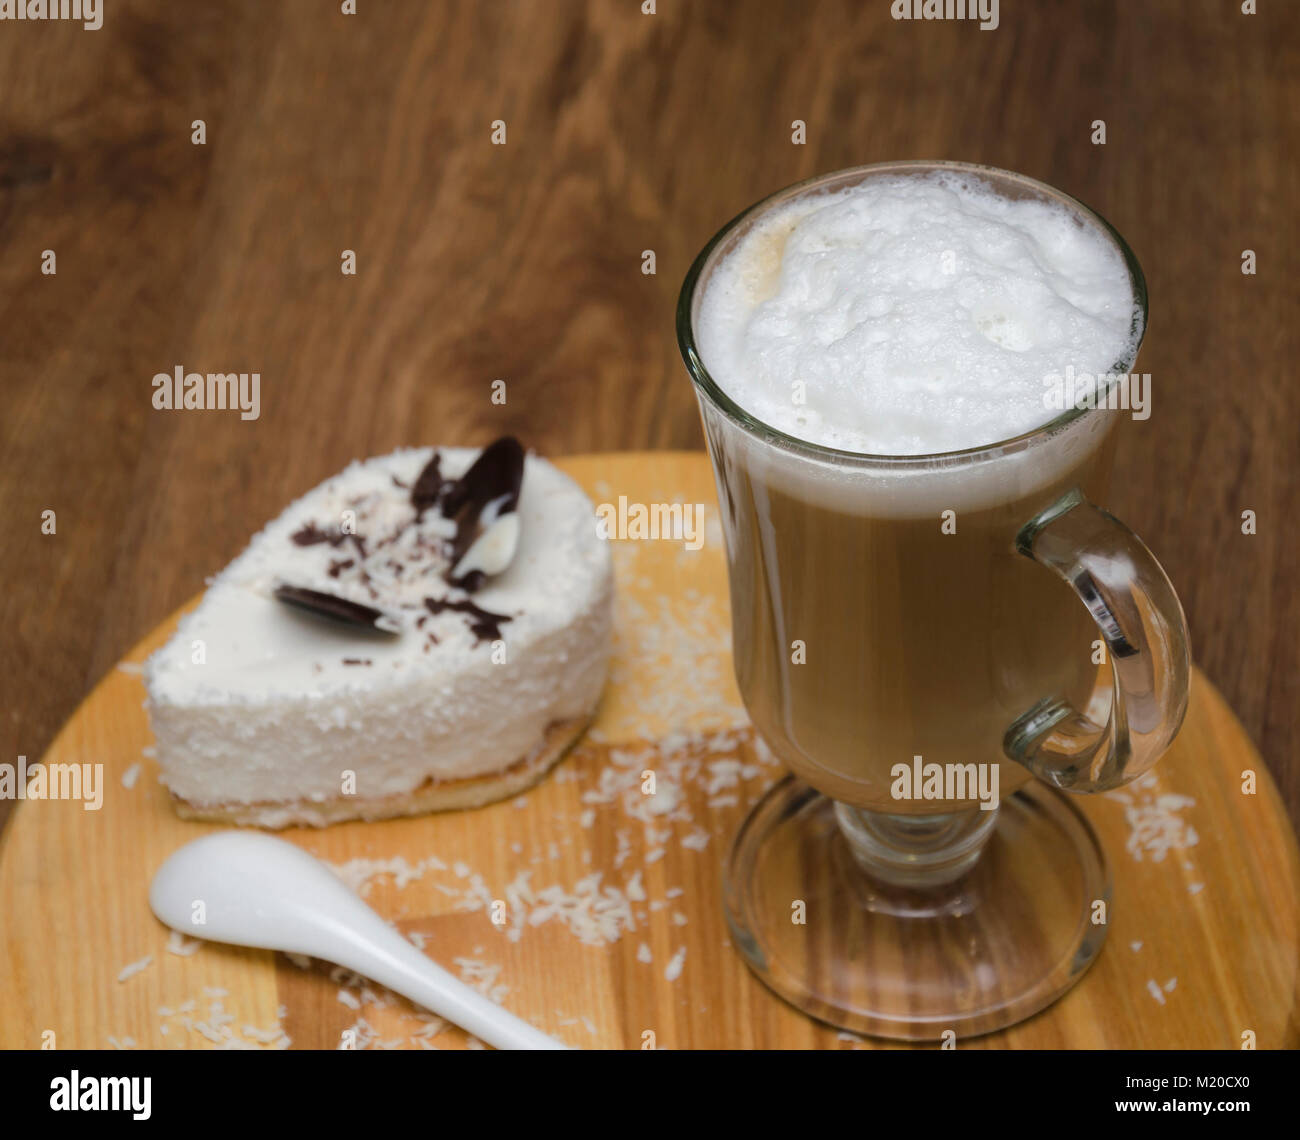 Heißes Getränk und Kaffee und Milch, Latte, Cappuccino, in einem schönen Glas Schale und Dessert, auf einem Holztisch Stockfoto